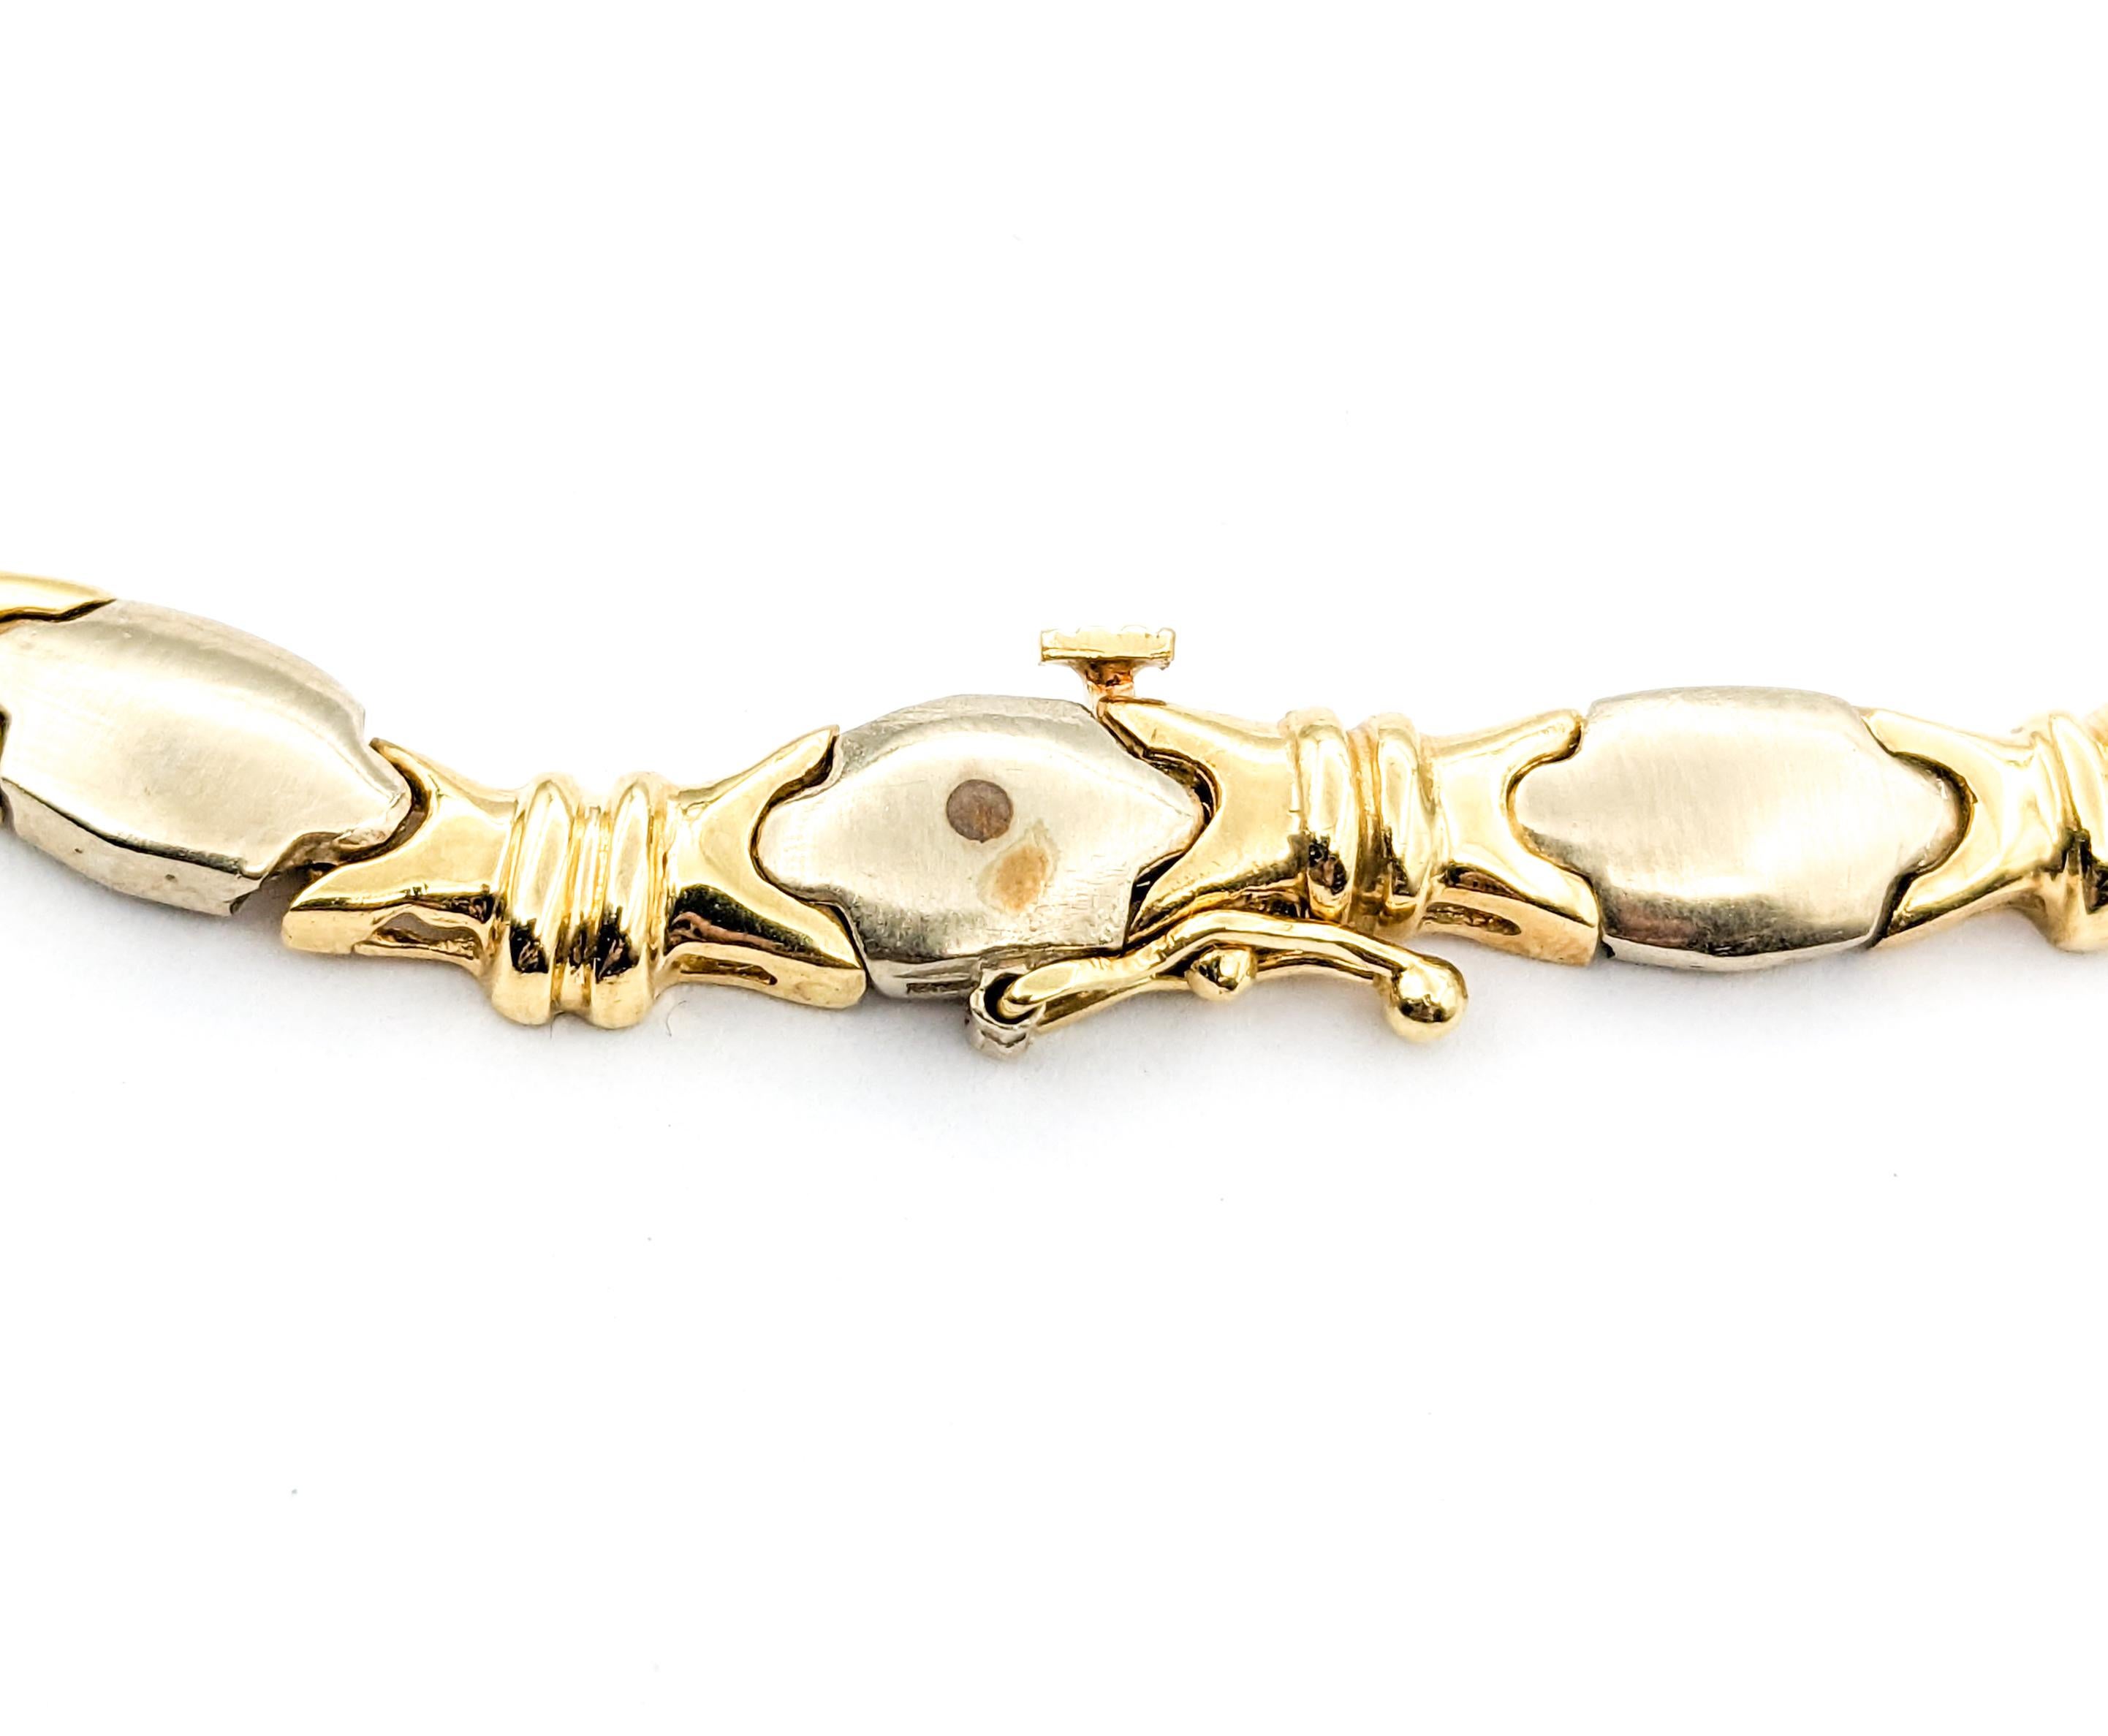 .25ctw Diamant Vintage Halskette in zweifarbigem Gold

Dieses elegante, sorgfältig aus zweifarbigem Gold gefertigte Diamanthalsband besticht durch sein Vintage-Design aus den 1980er Jahren. Er verfügt über 0,25 ct Diamanten mit SI-Klarheit, die